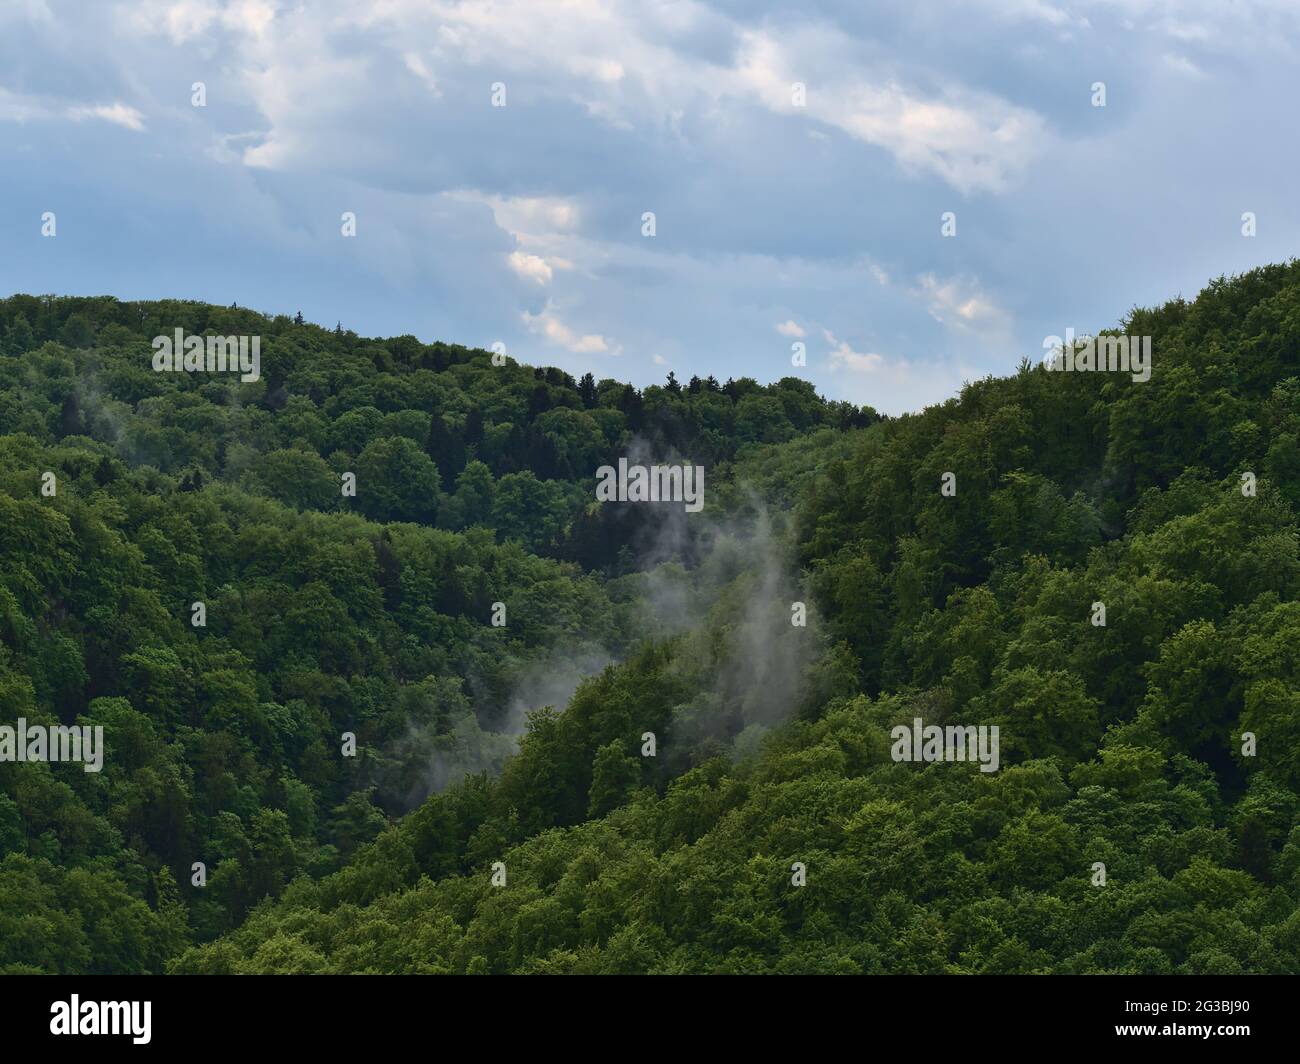 Paisaje forestal con aire húmedo y aumento de la niebla después de fuertes lluvias de verano en las colinas de Suabia Alb cerca de Lichtenstein, Alemania con árboles verdes. Foto de stock